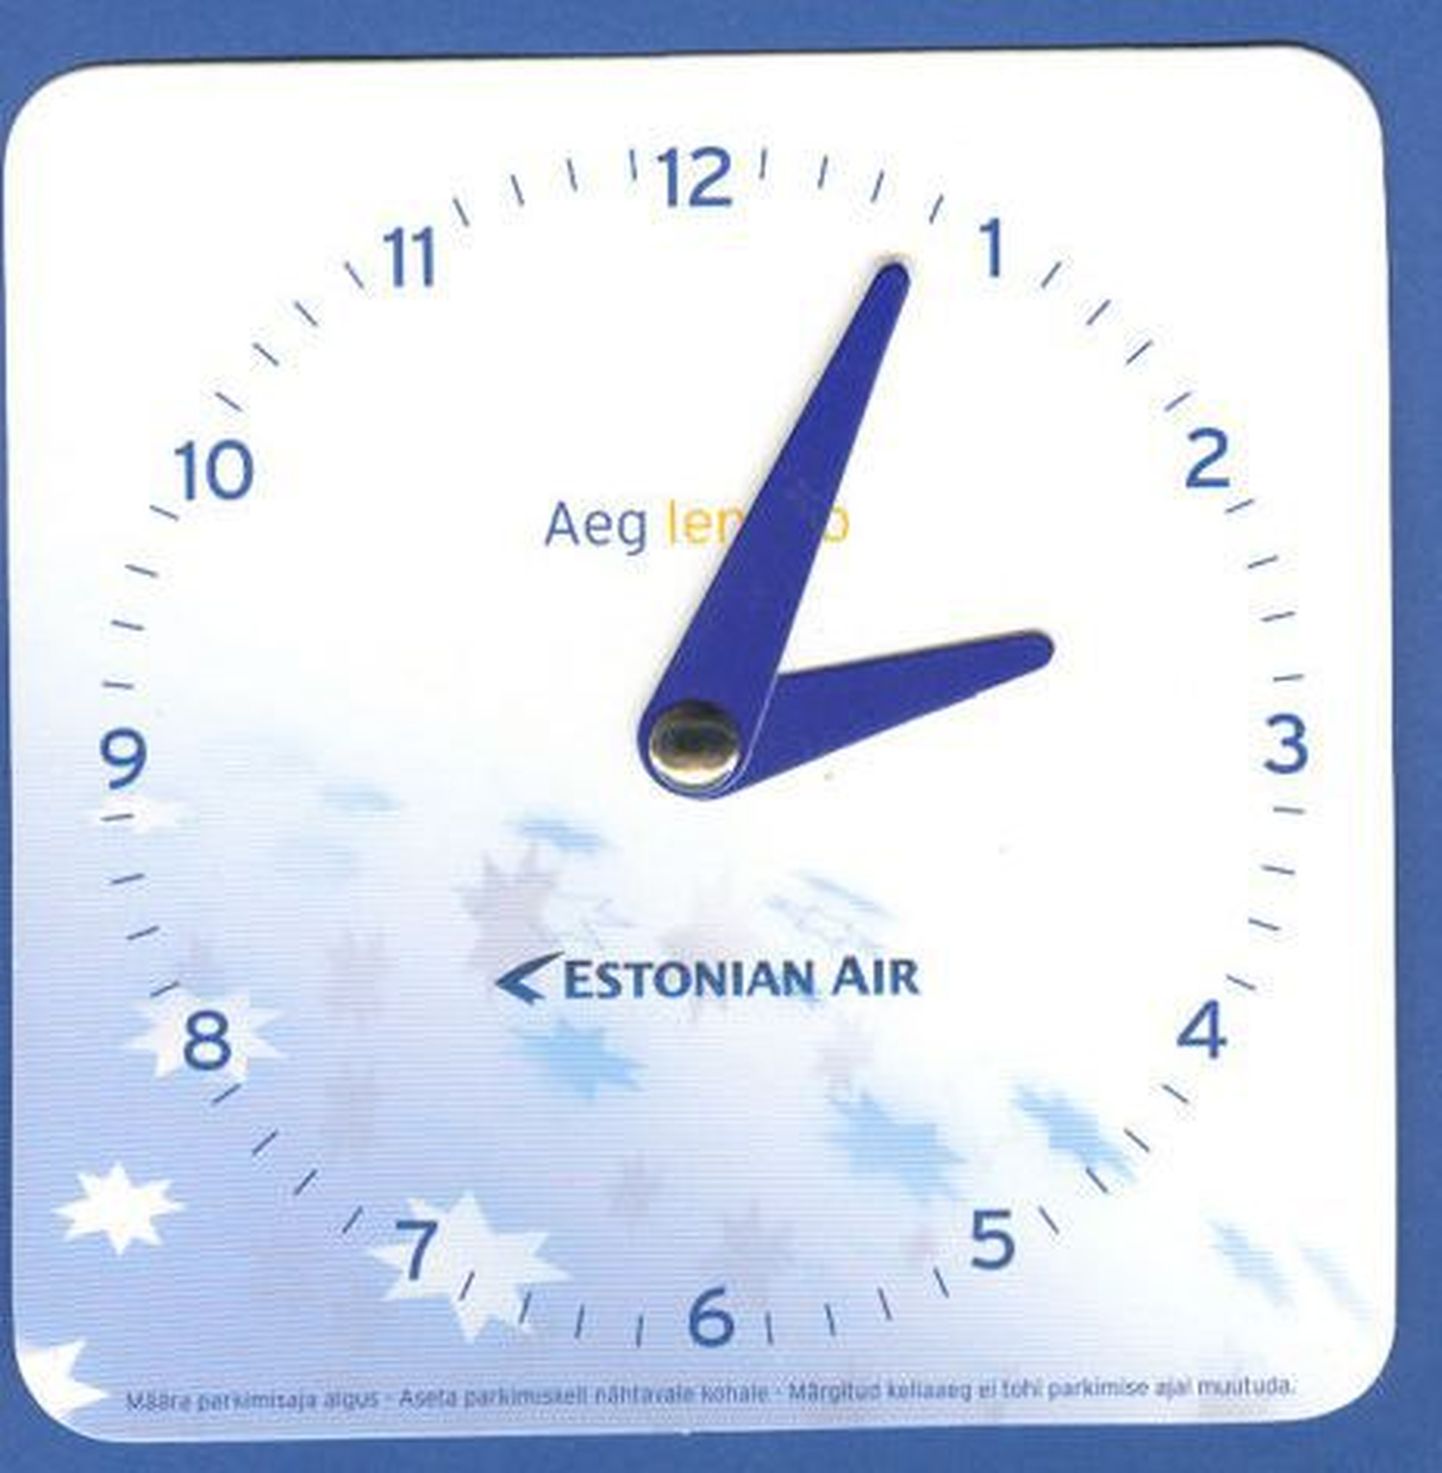 Estonian Airi tunnuslause - Aeg lendab - sai pühapäevast täiesti uue tähenduse.